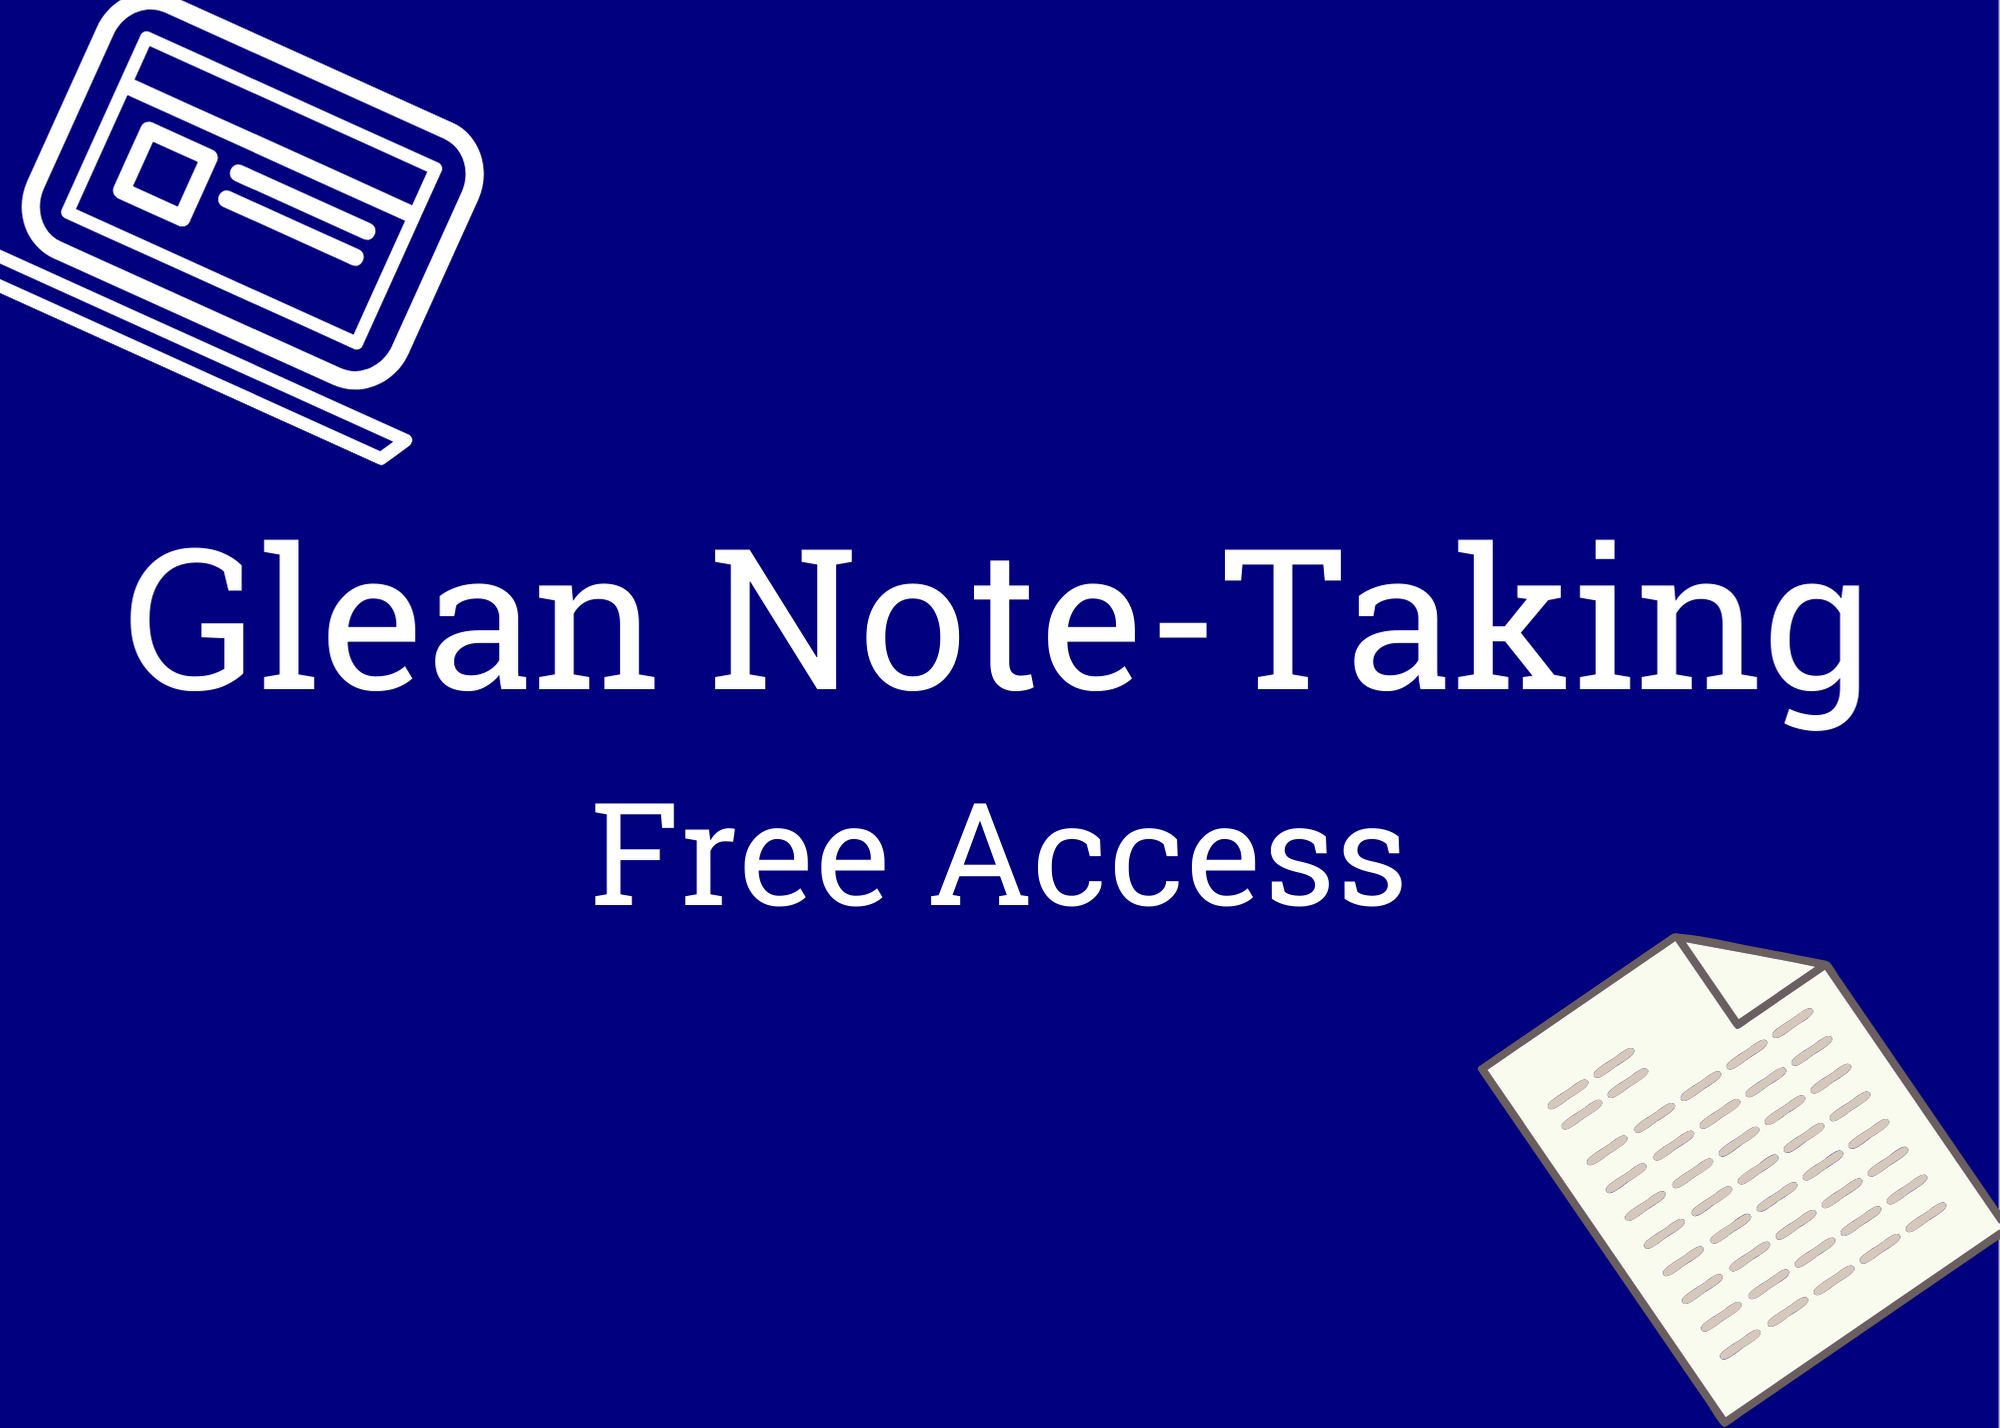 glean note taking app